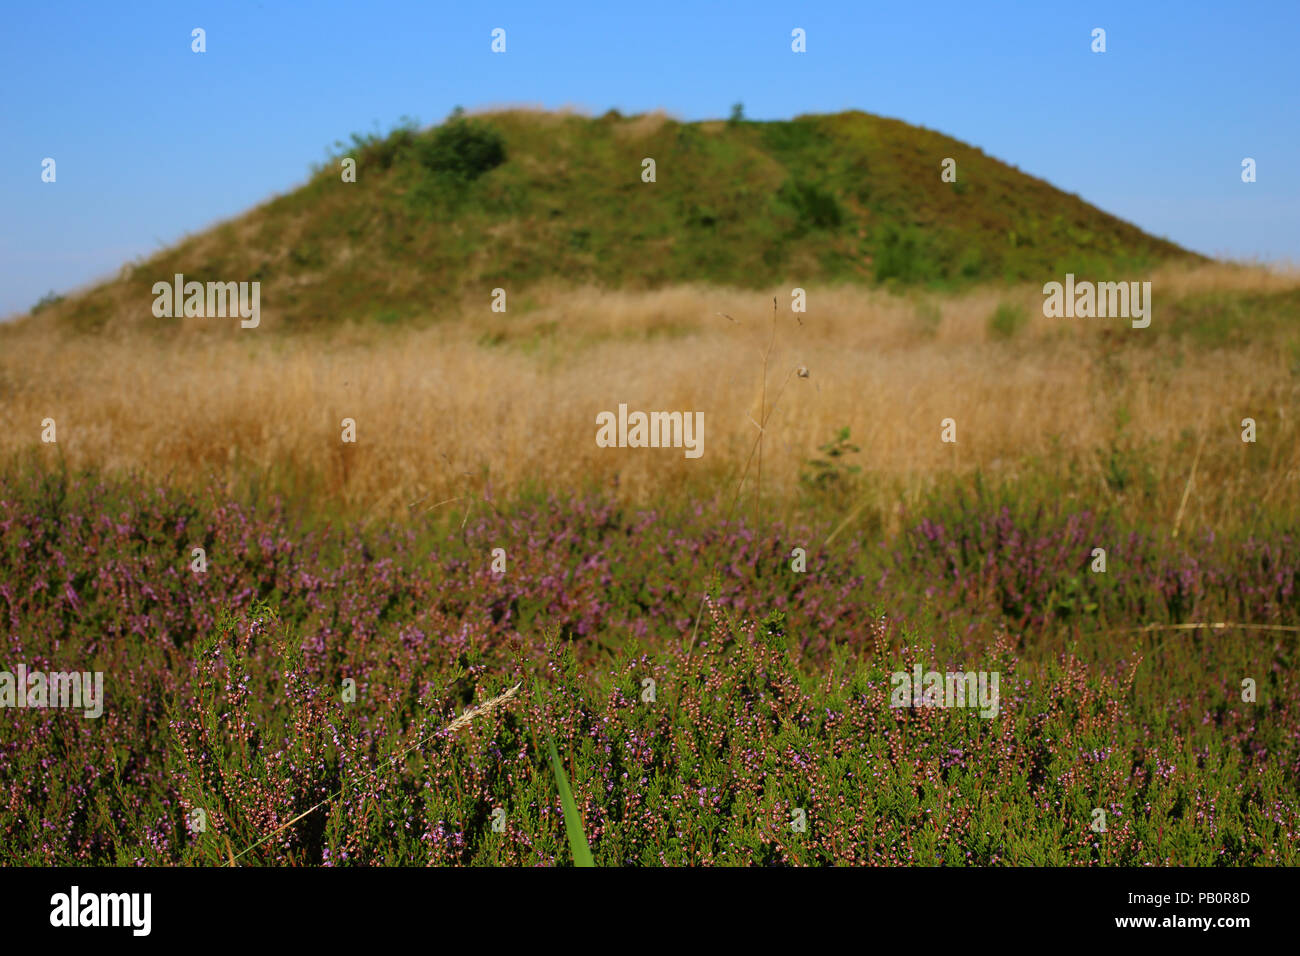 Bronze age burial mound (Firehøje) near Vejle, Denmark Stock Photo